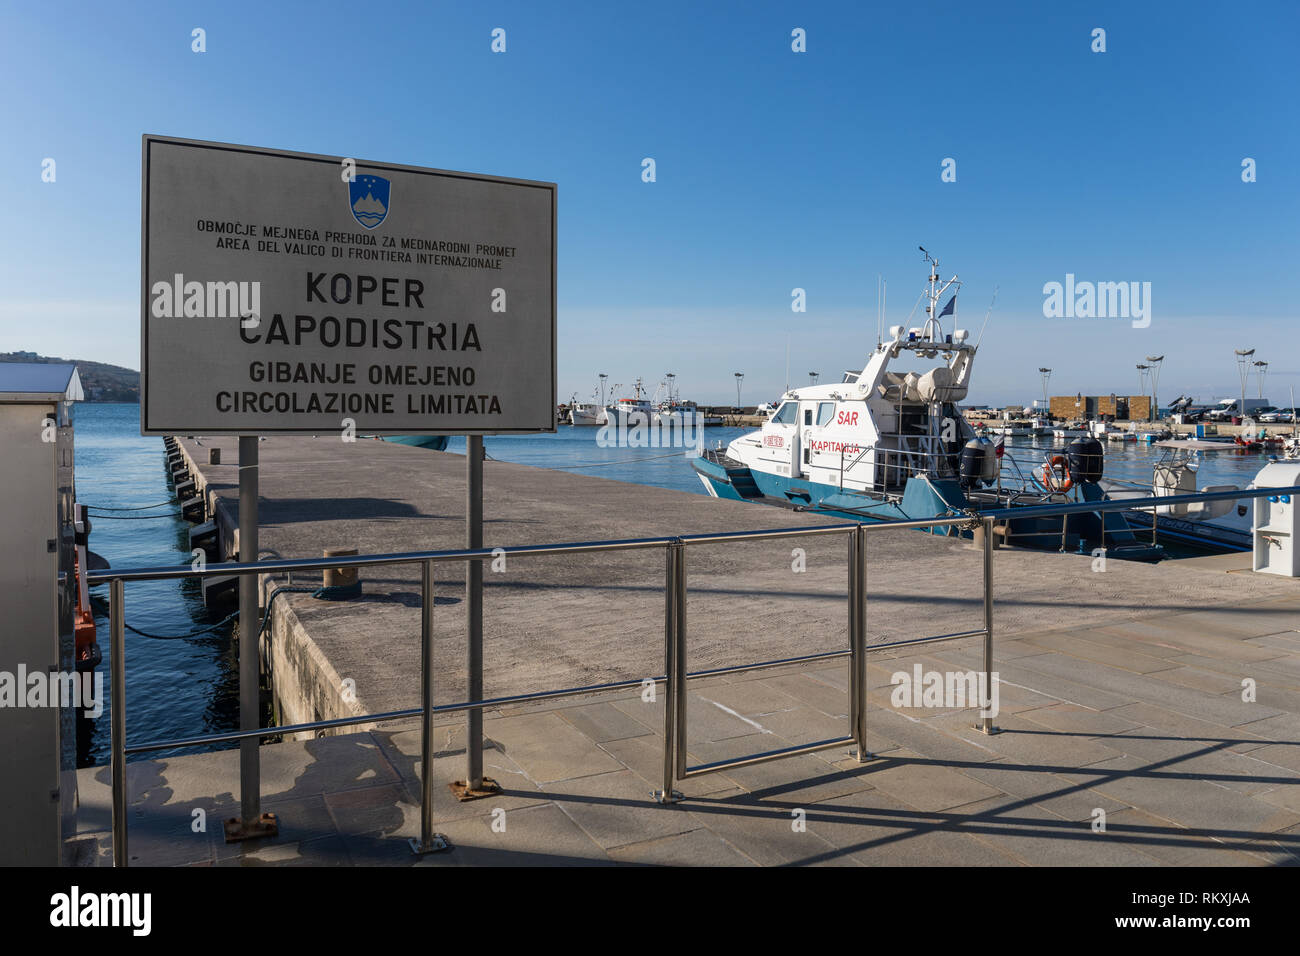 Border crossing point for international maritime traffic in Koper, Slovenia Stock Photo